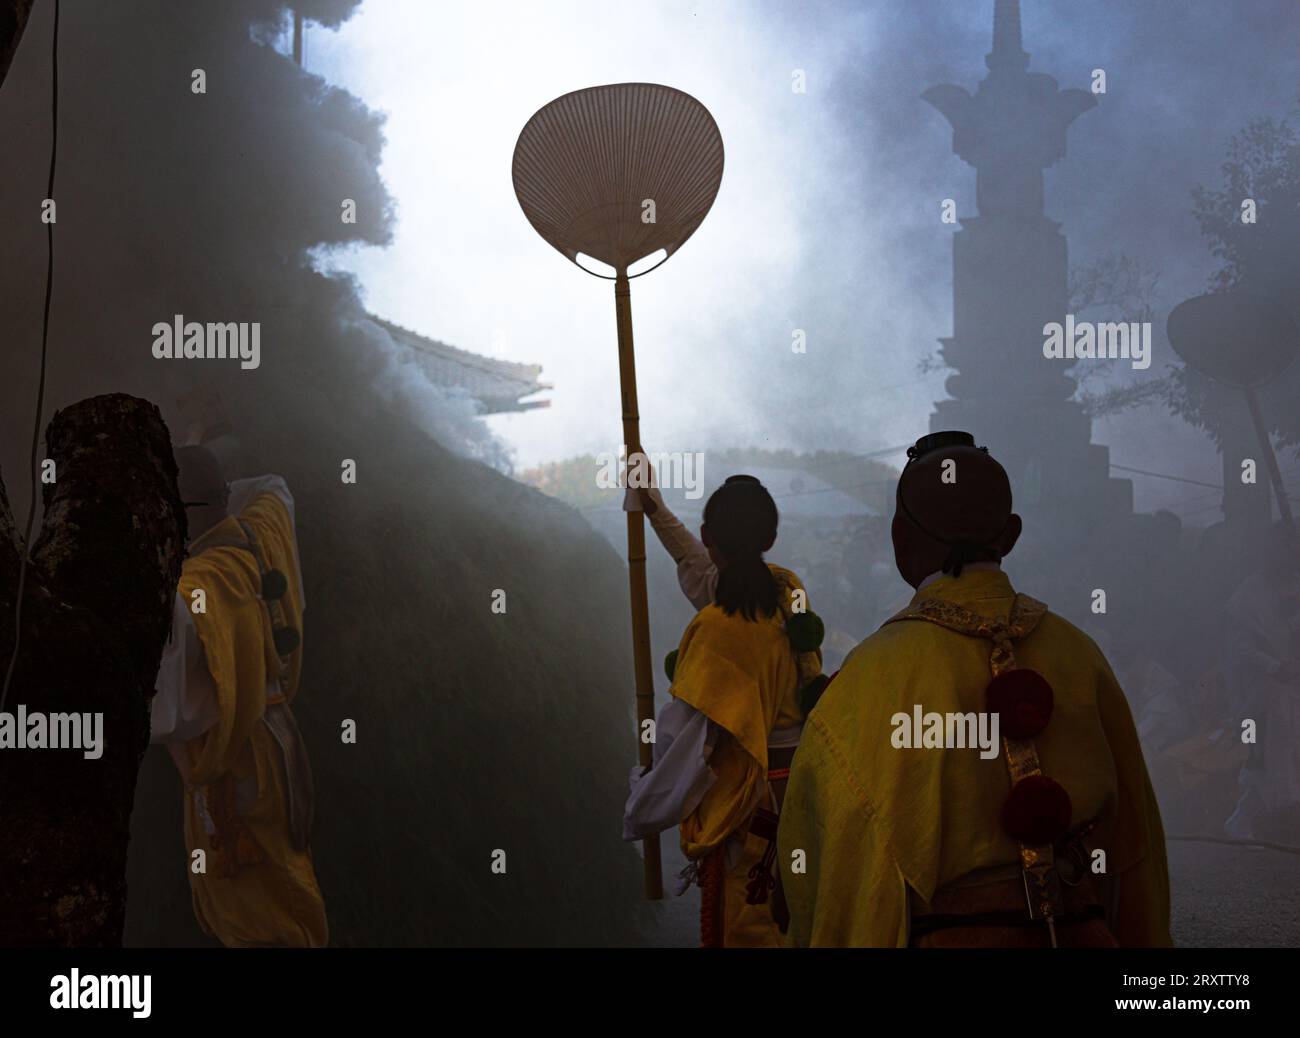 Fête du feu en automne montrant des moines bouddhistes en fumée à Koyasan, préfecture de Wakayama, Honshu, Japon, Asie Banque D'Images